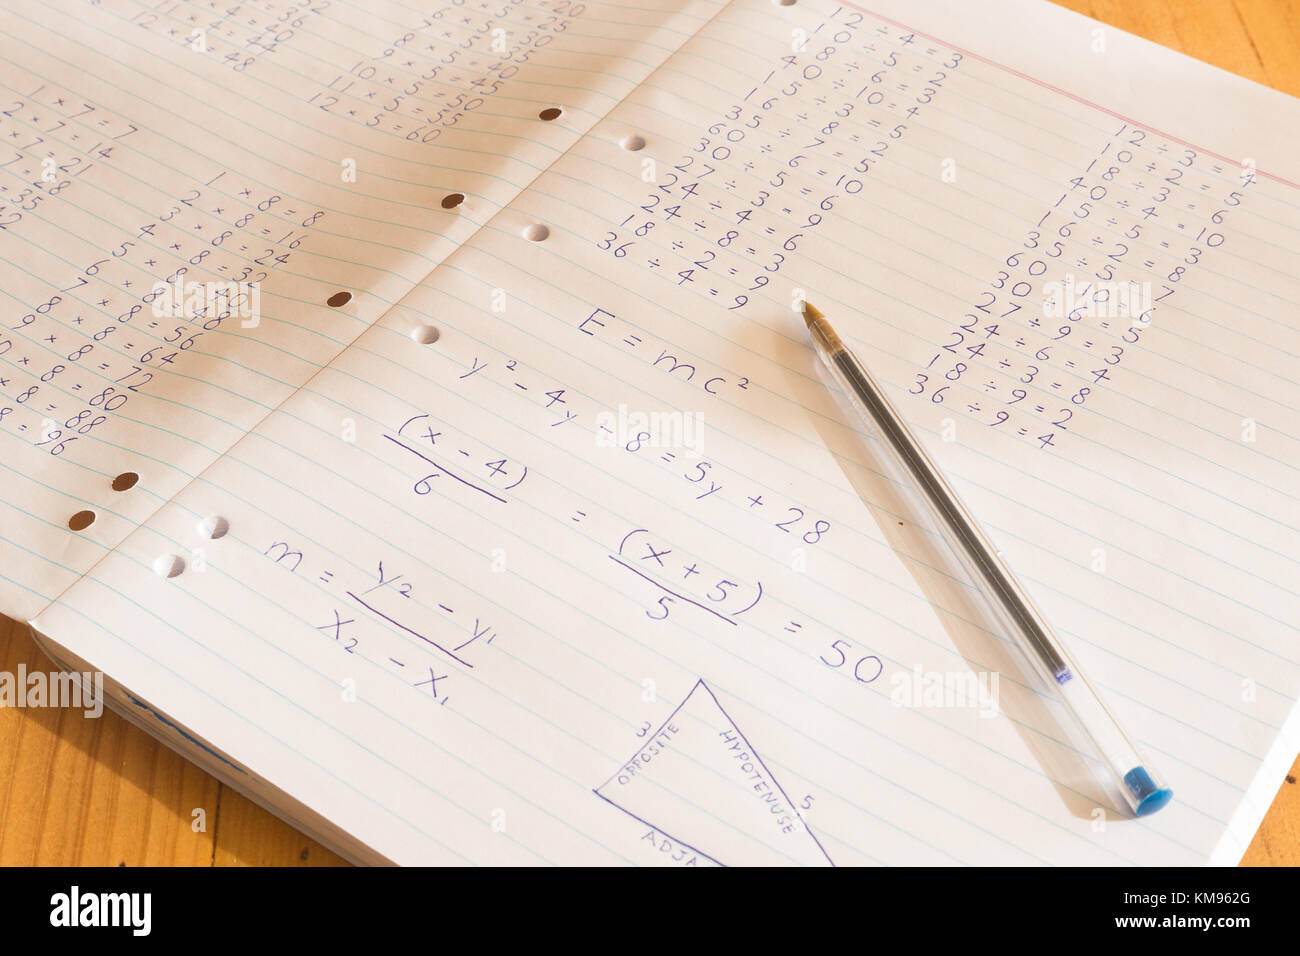 Les montants mis en mathématique sur papier bloc-notes avec stylo Banque D'Images